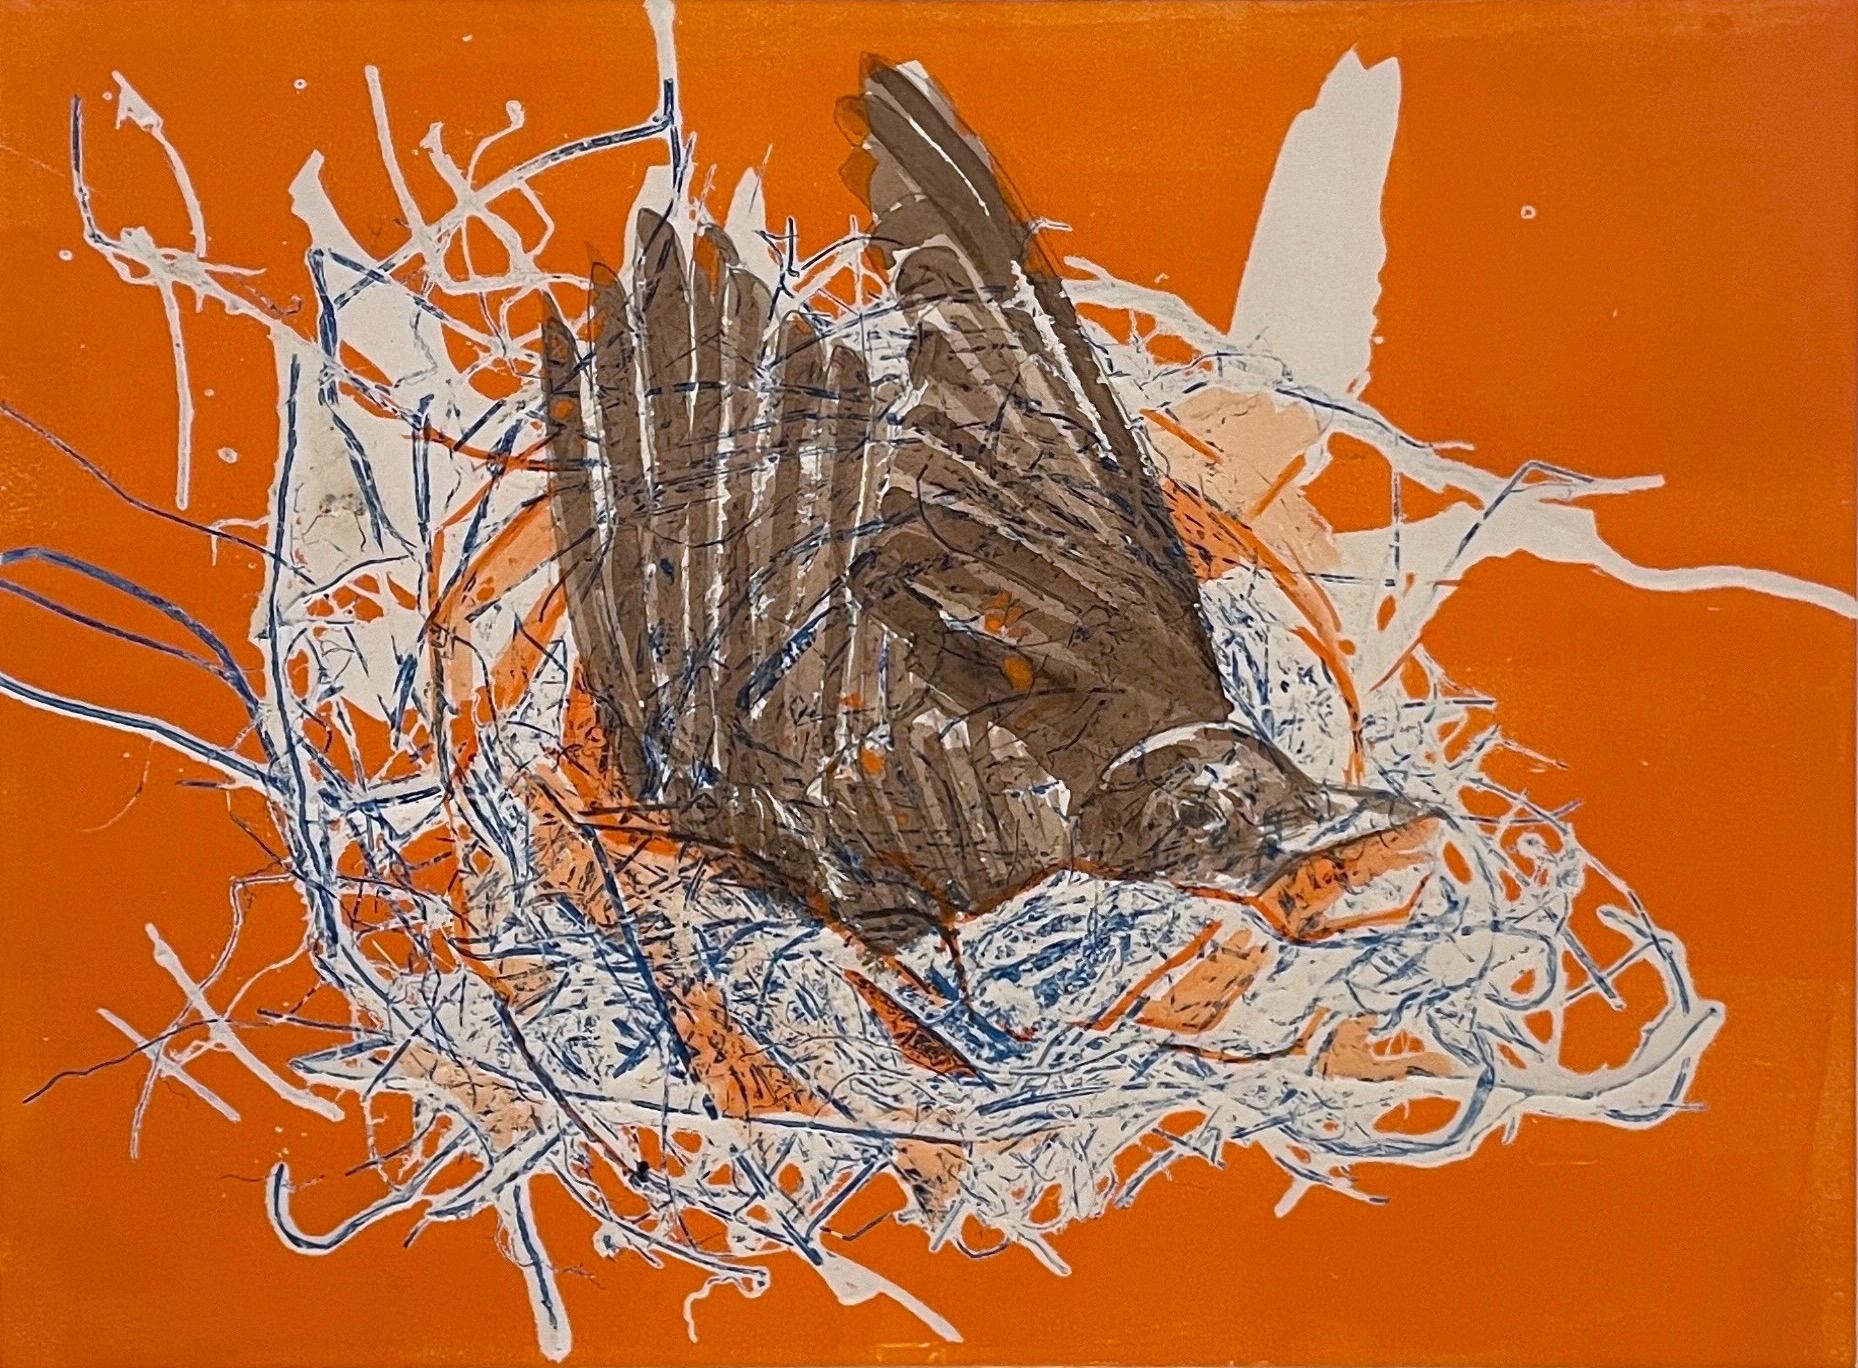 Preparation: einzigartiges Monoprint-Gemälde eines abstrakten Vogels in einem orangefarbenen Neckholder